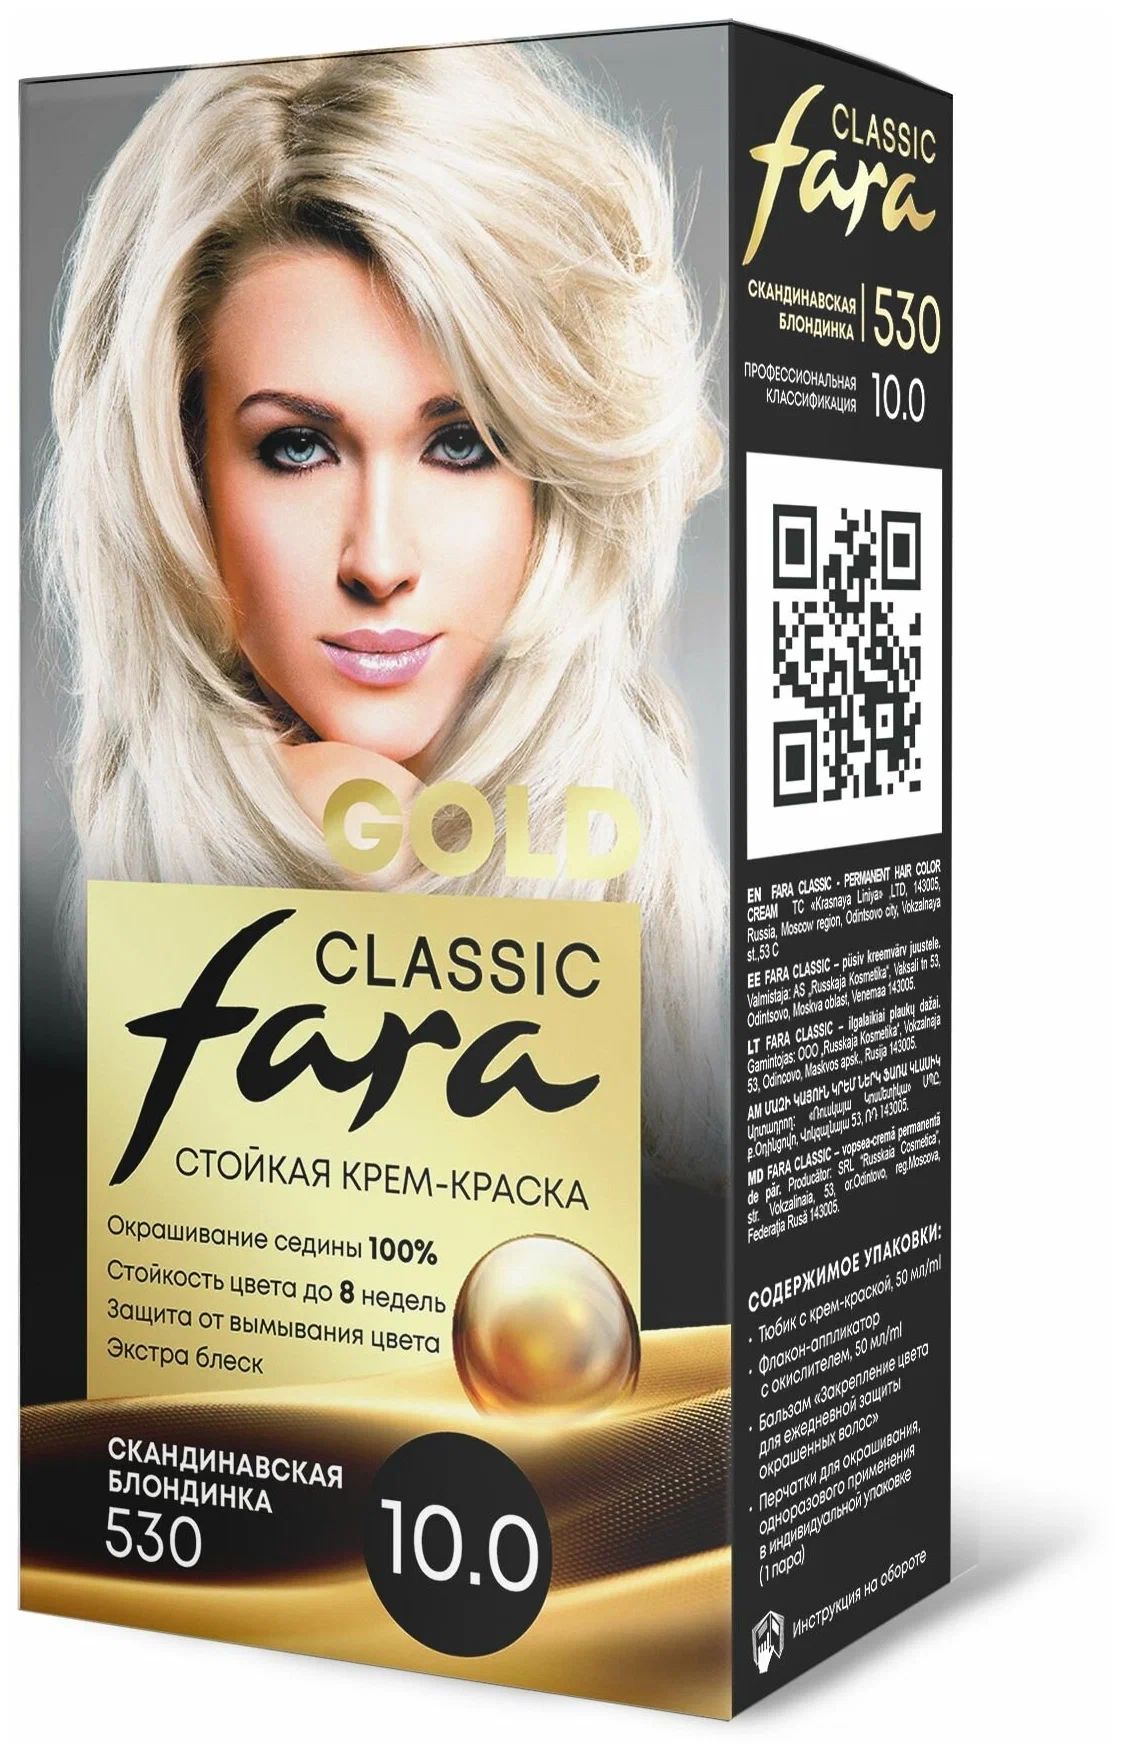 Крем-краска для волос Fara Classic Gold 530 скандинавская блондинка 10.0, 140 г русская религиозная аксиология